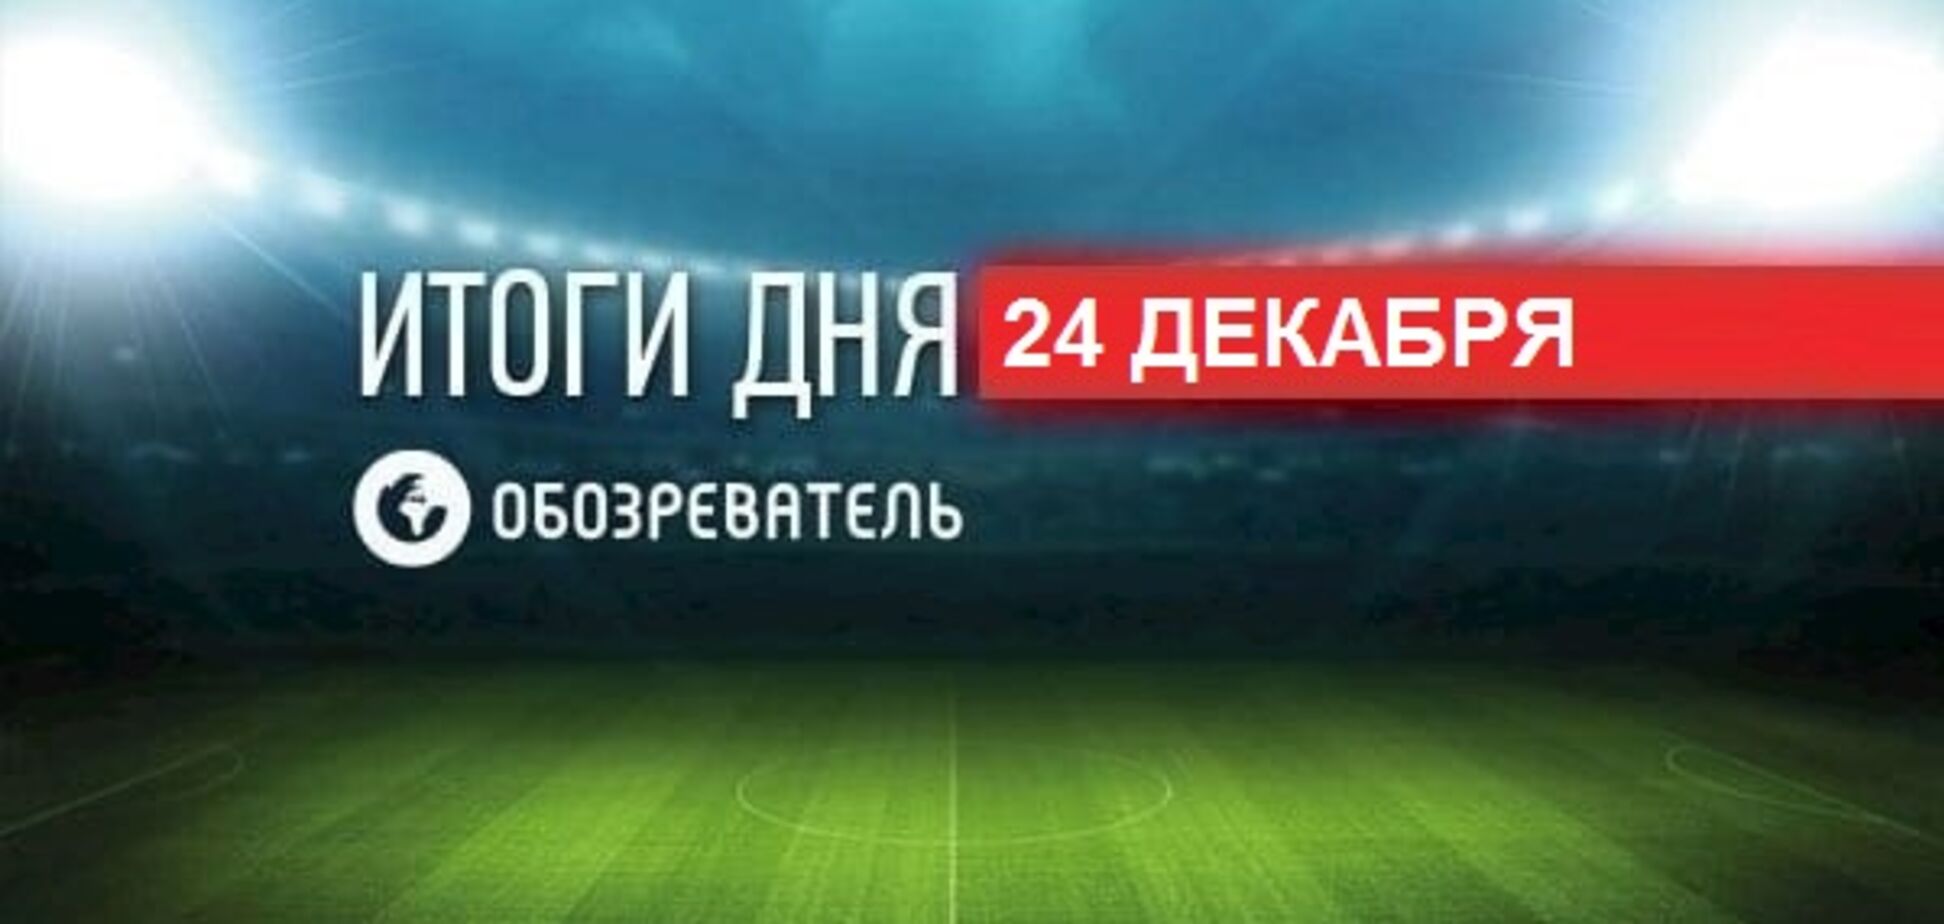 Украинский футболист забил шедевральный гол с углового: спортивные итоги 24 декабря